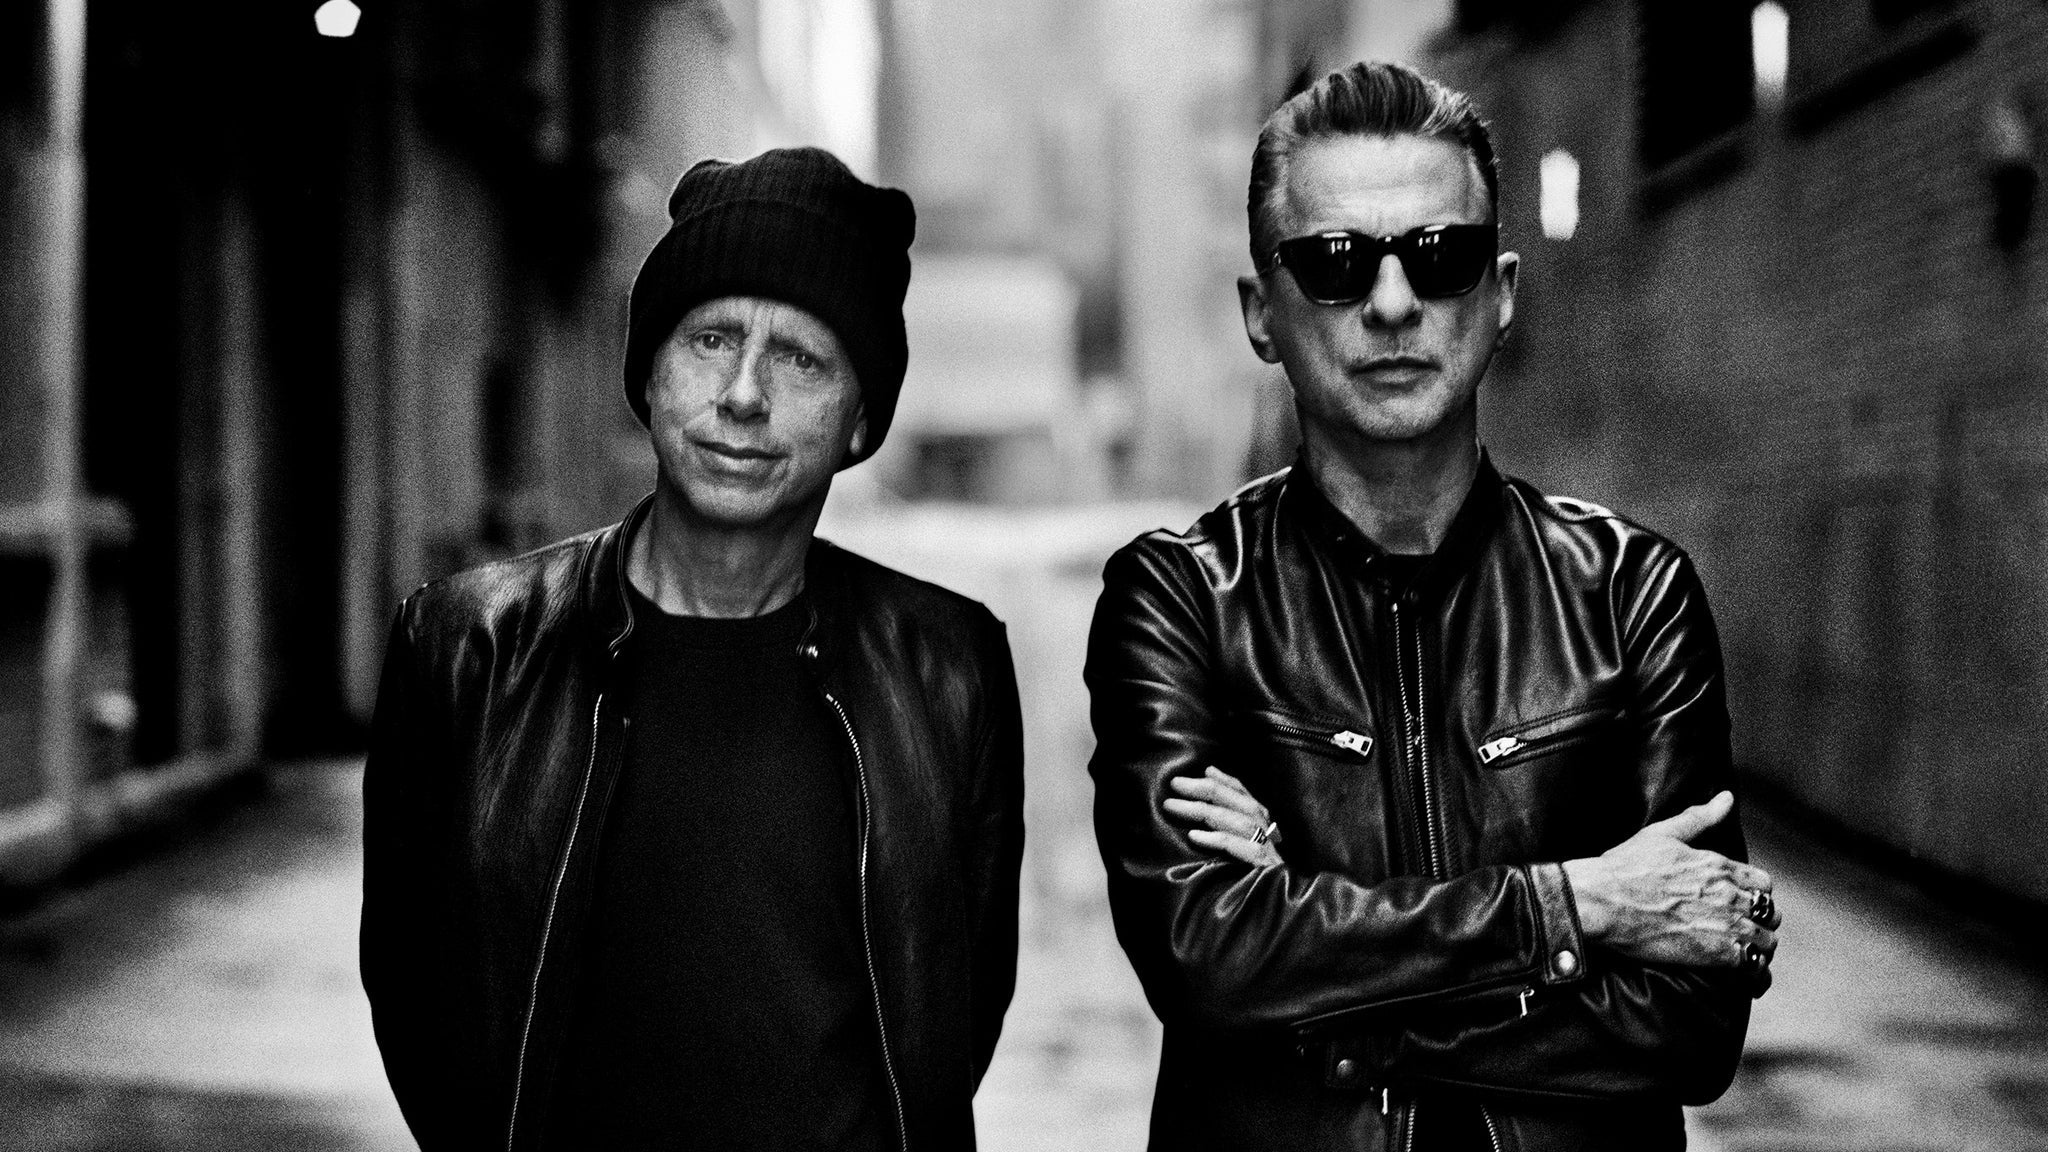 Depeche Mode: Memento Mori Tour at Pechanga Arena San Diego - San Diego, CA 92110